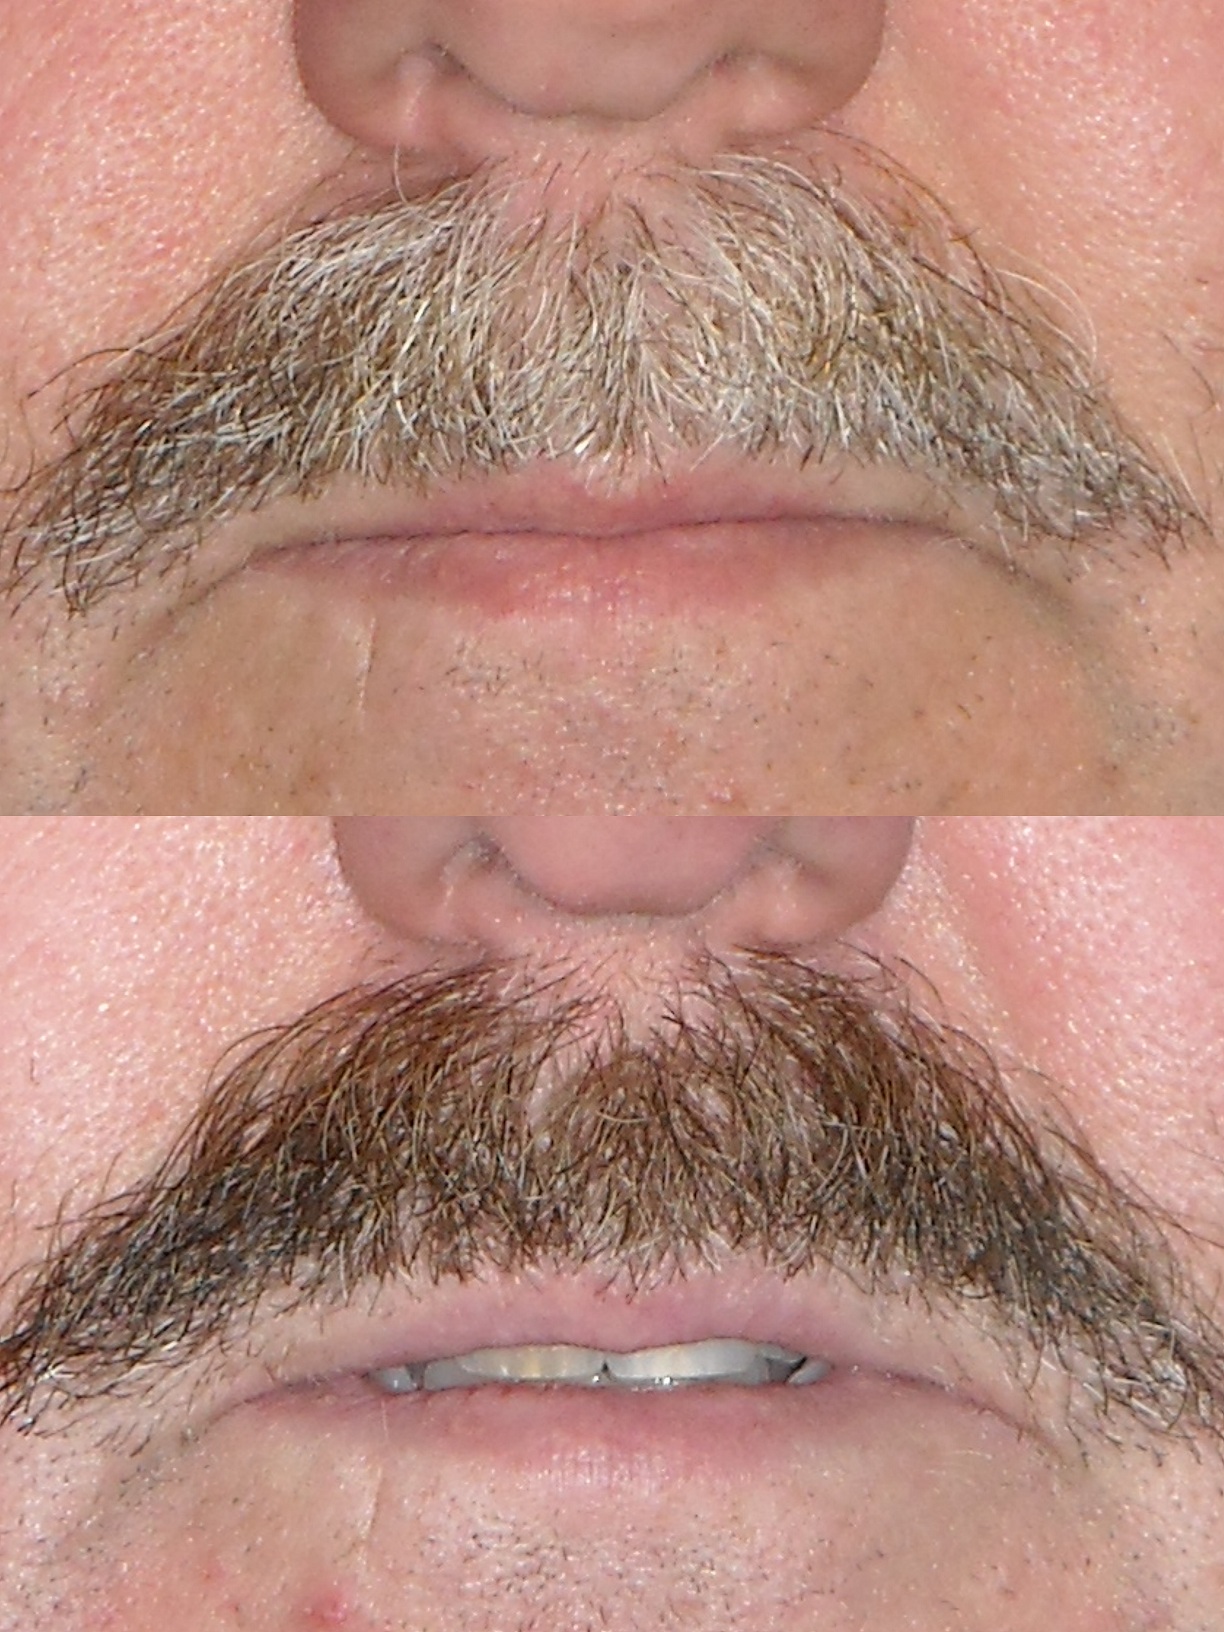 Mustache dye job seen by Seattle Plastic Surgeon